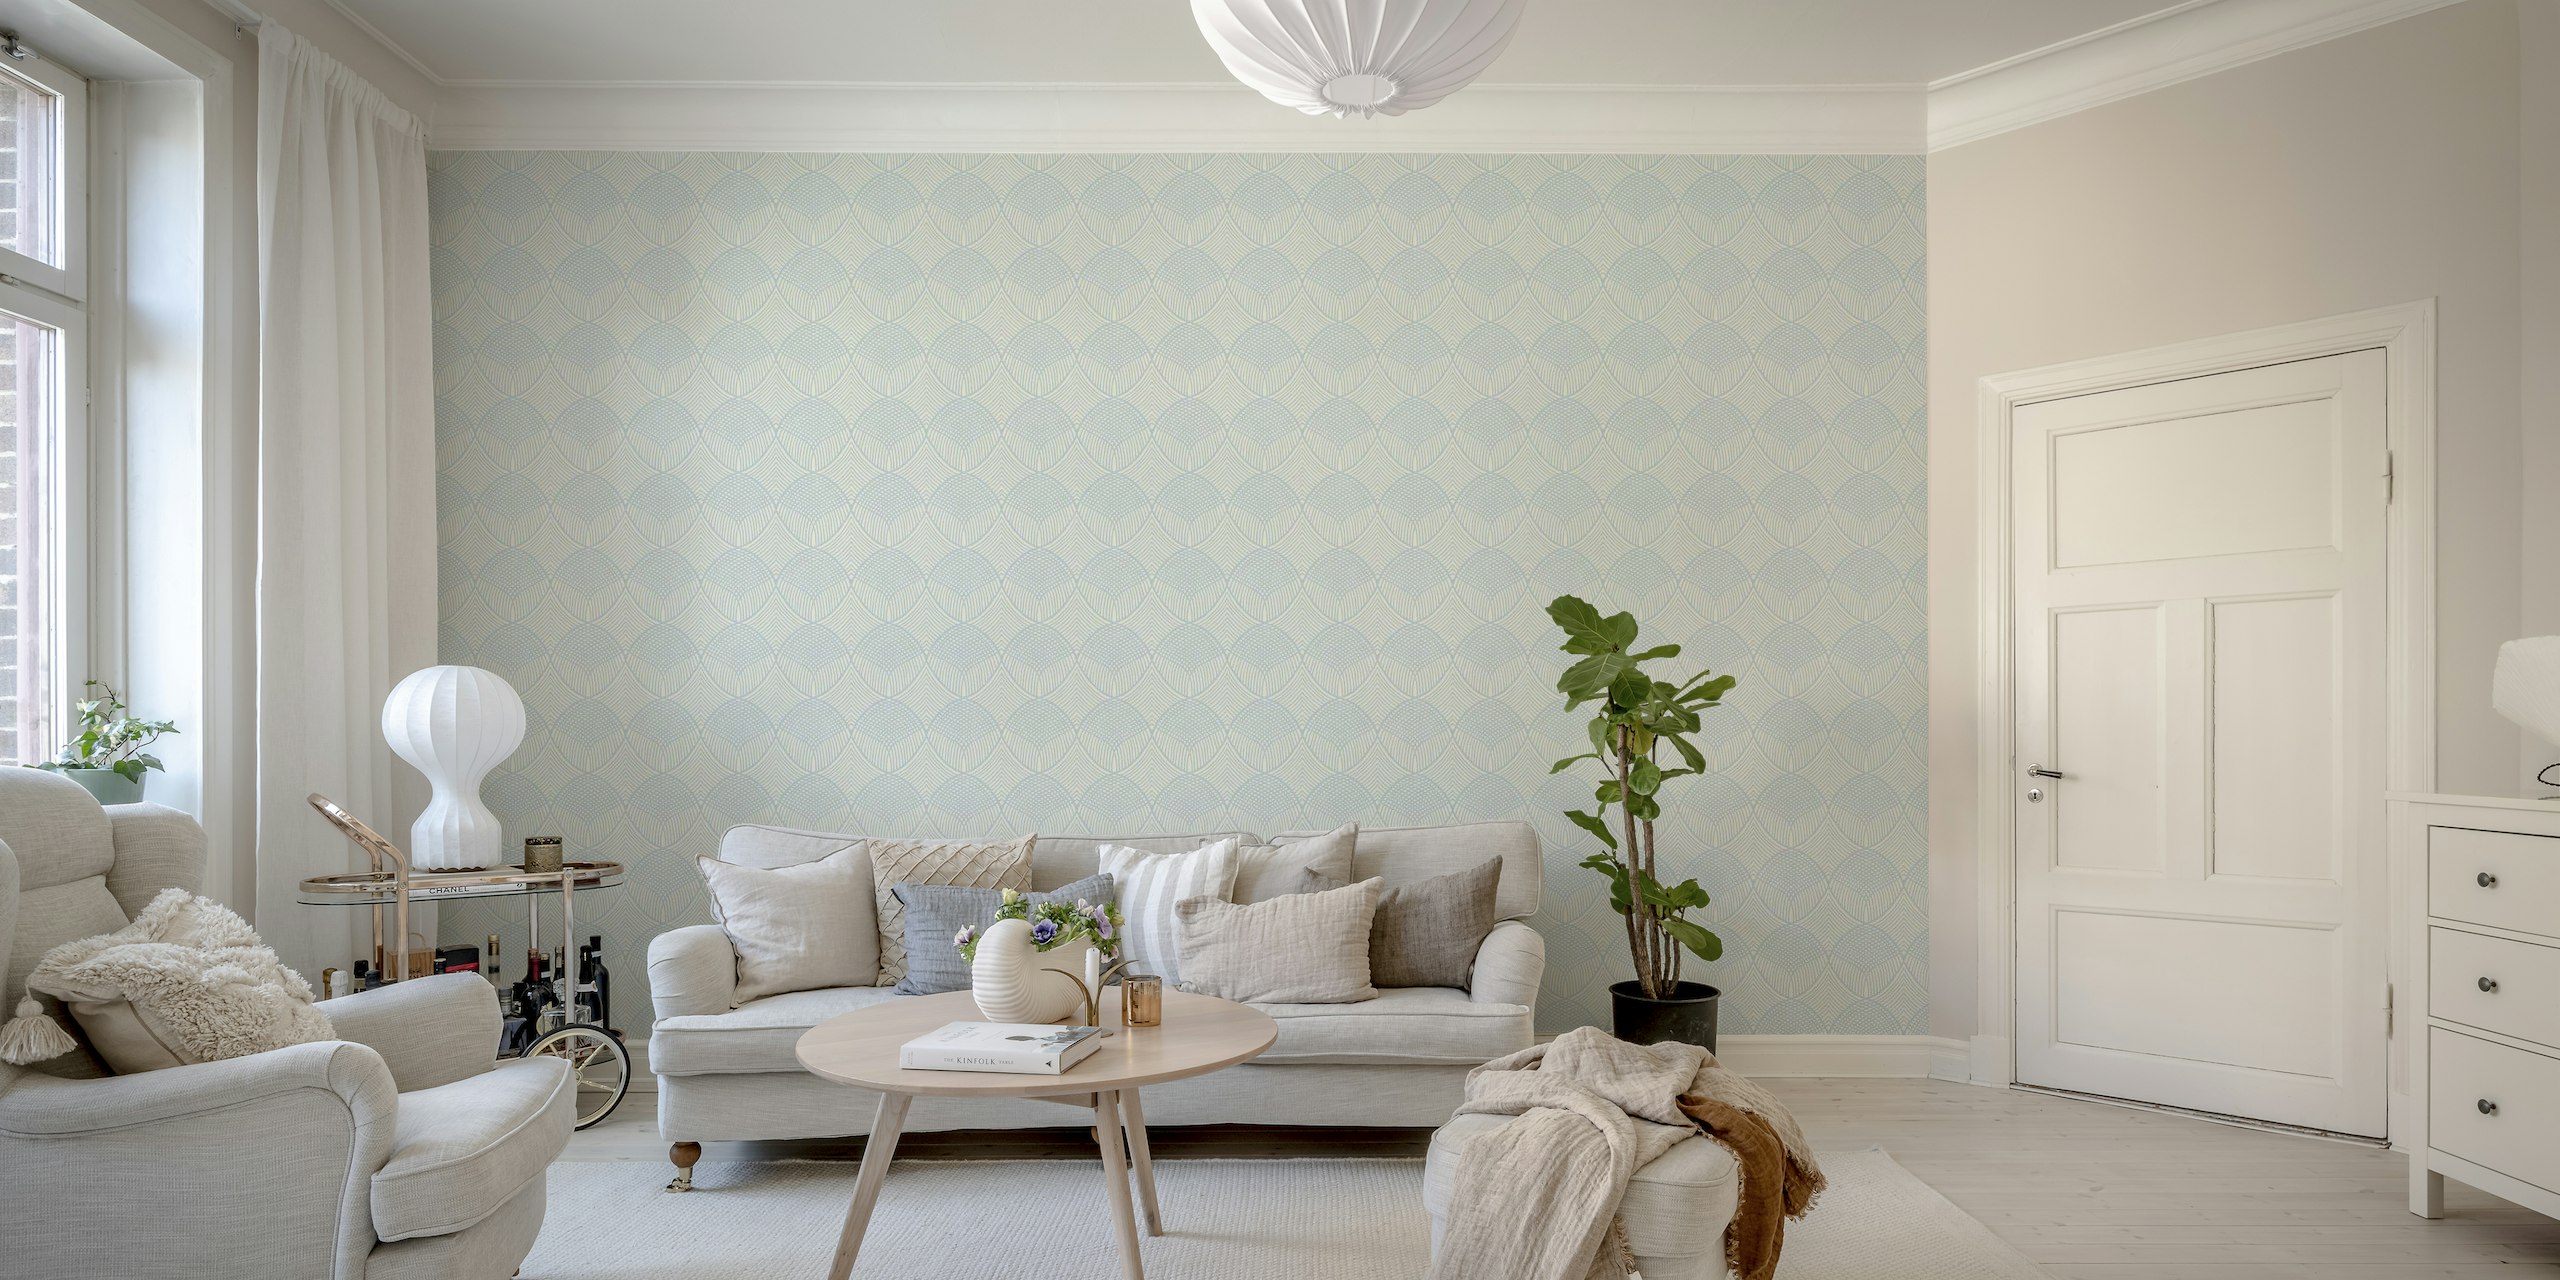 Fotomural vinílico de parede azul Richmond com padrões geométricos suaves